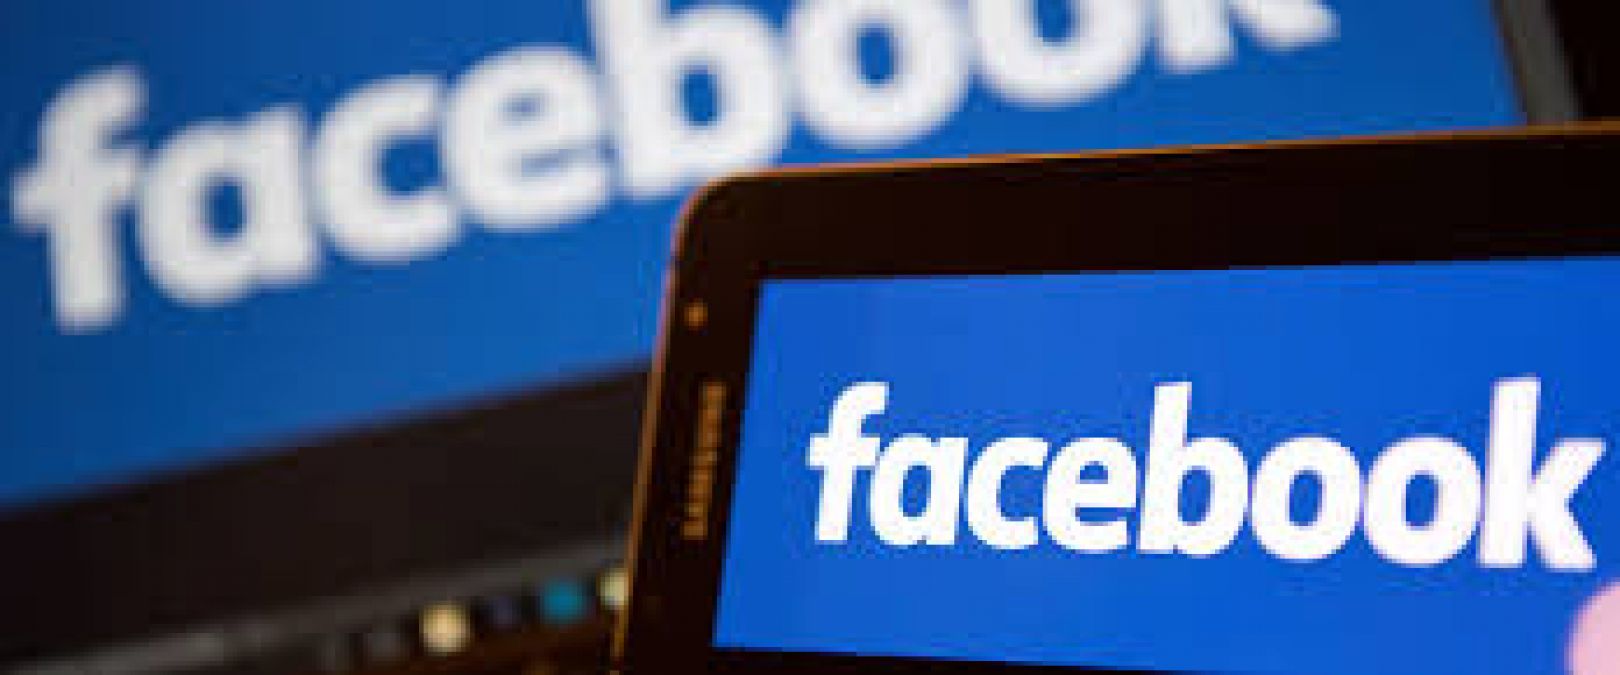 Phone numbers of 40 crore Facebook users leaked